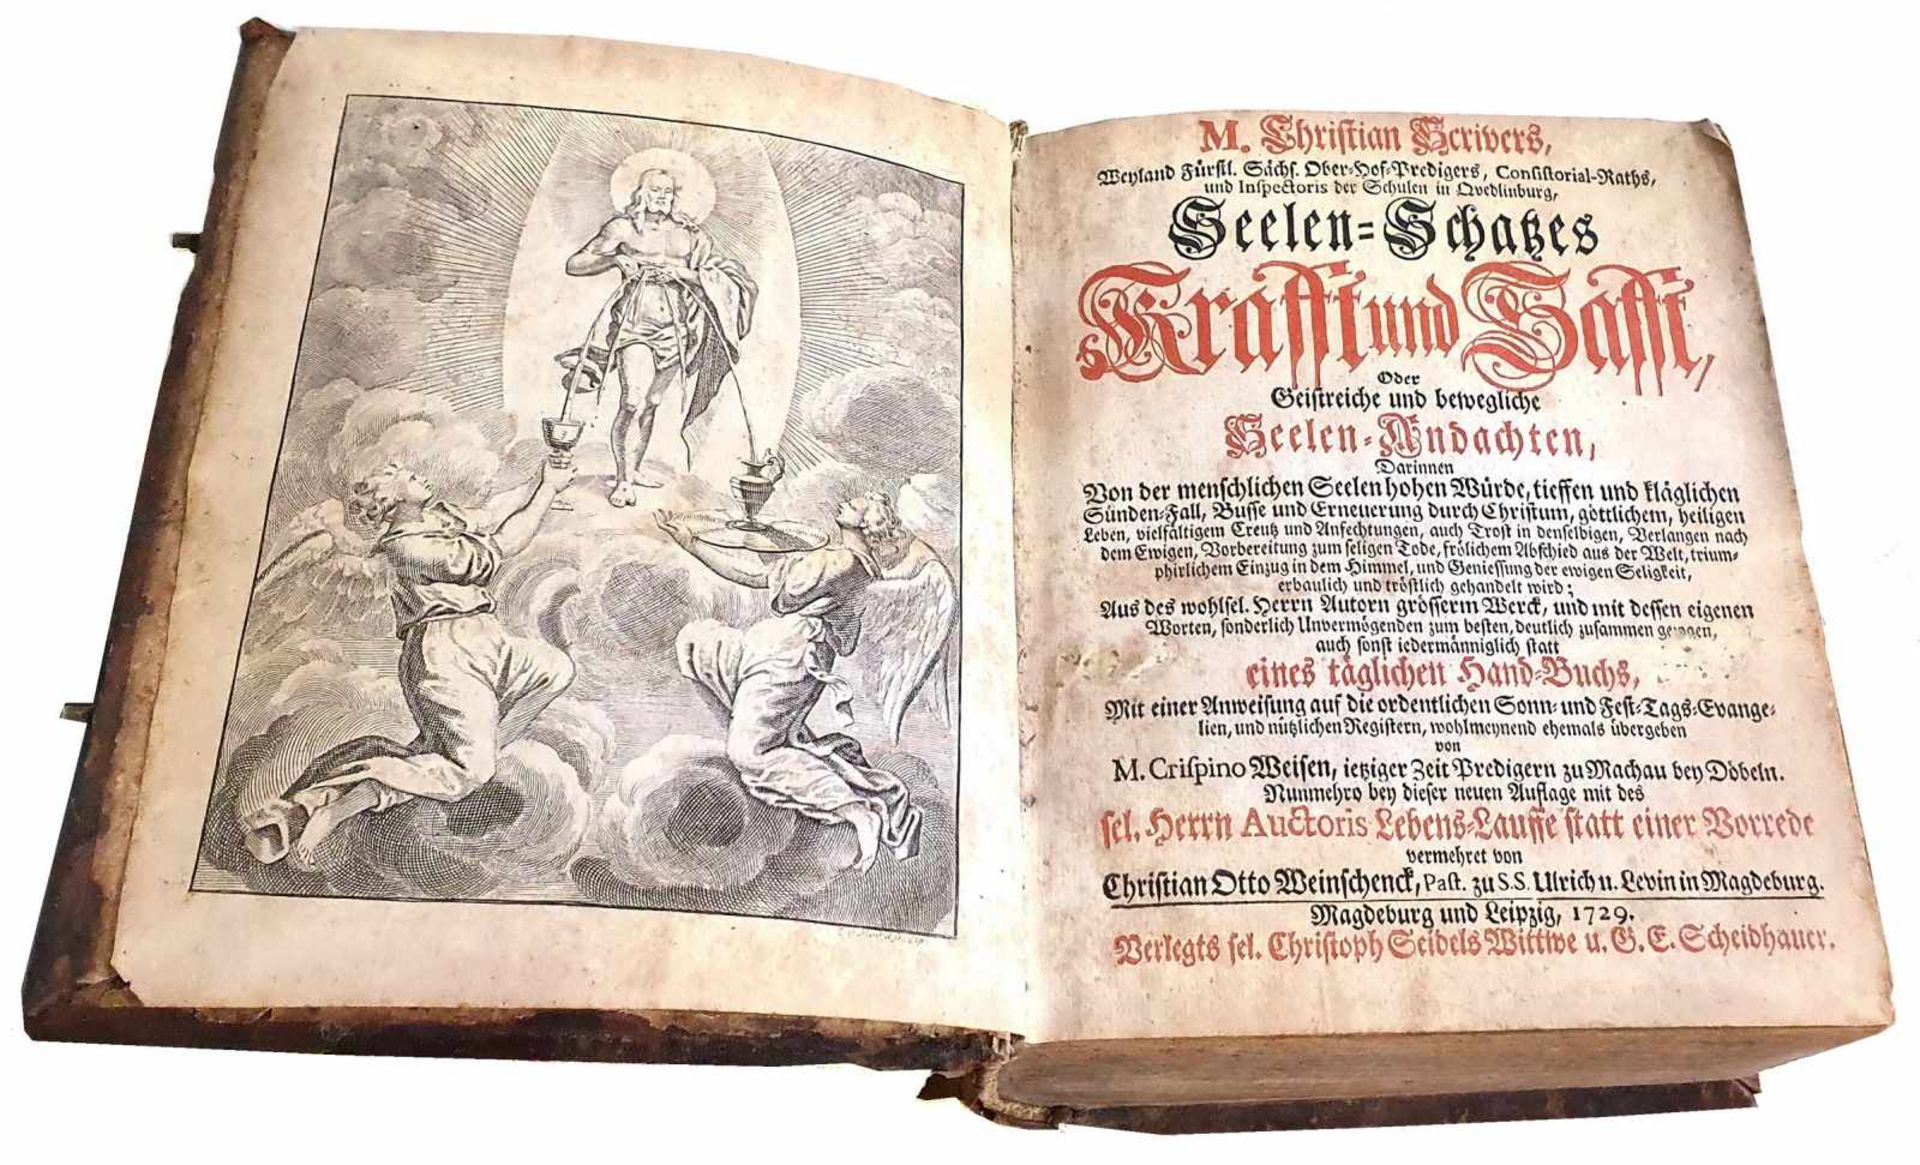 IMPORTANT LIVRE, MAGDEBURG, 1729Christian Schrivers, Seelen SchabesImportant livre d'enviro